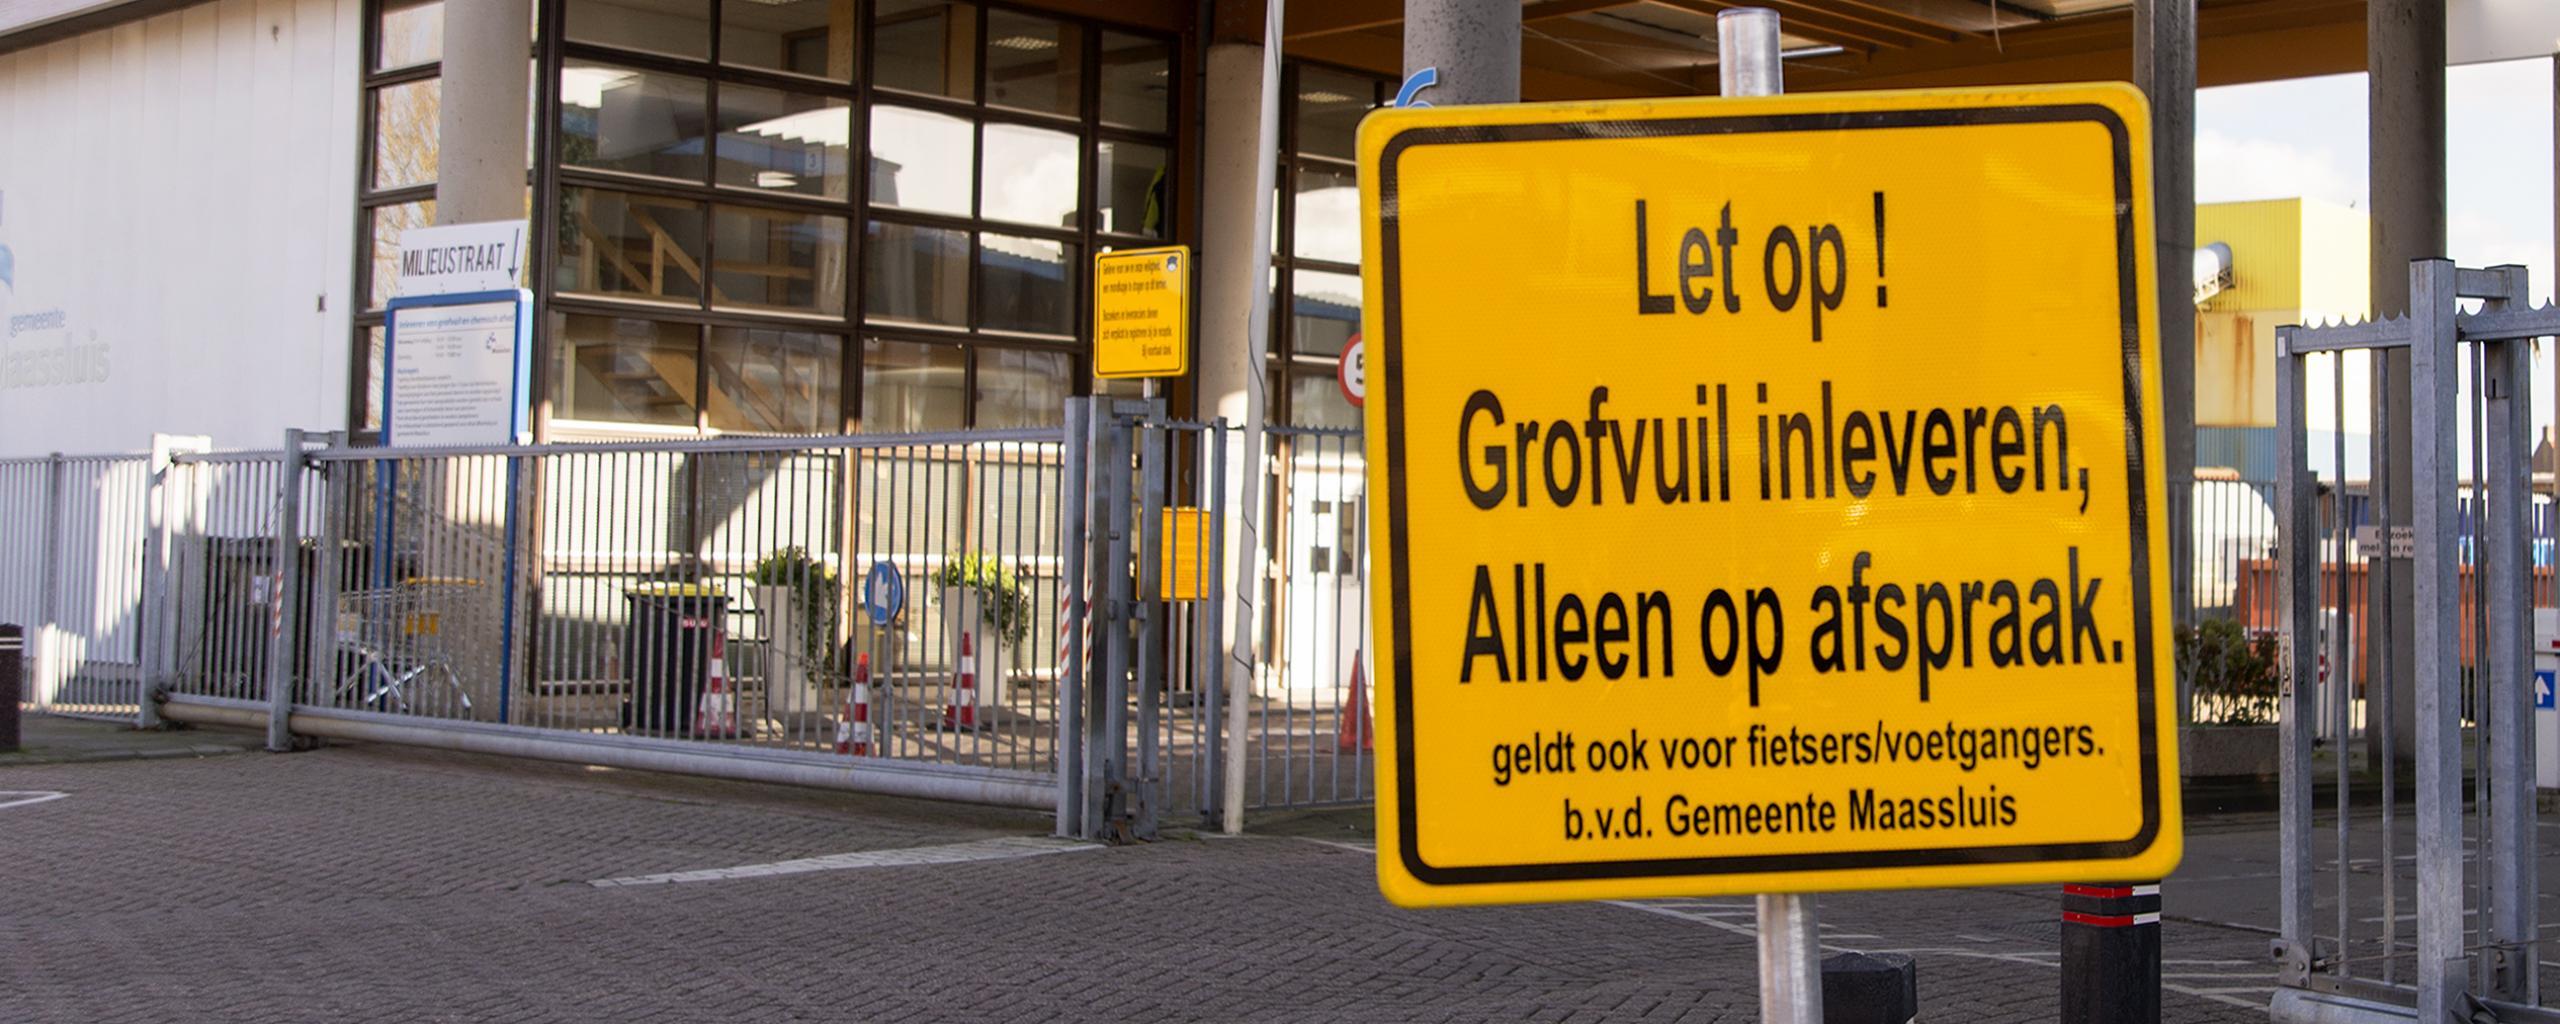 afbeelding van een bord met tekst "Let op! Grofvuil inleveren alleen op afspraak"